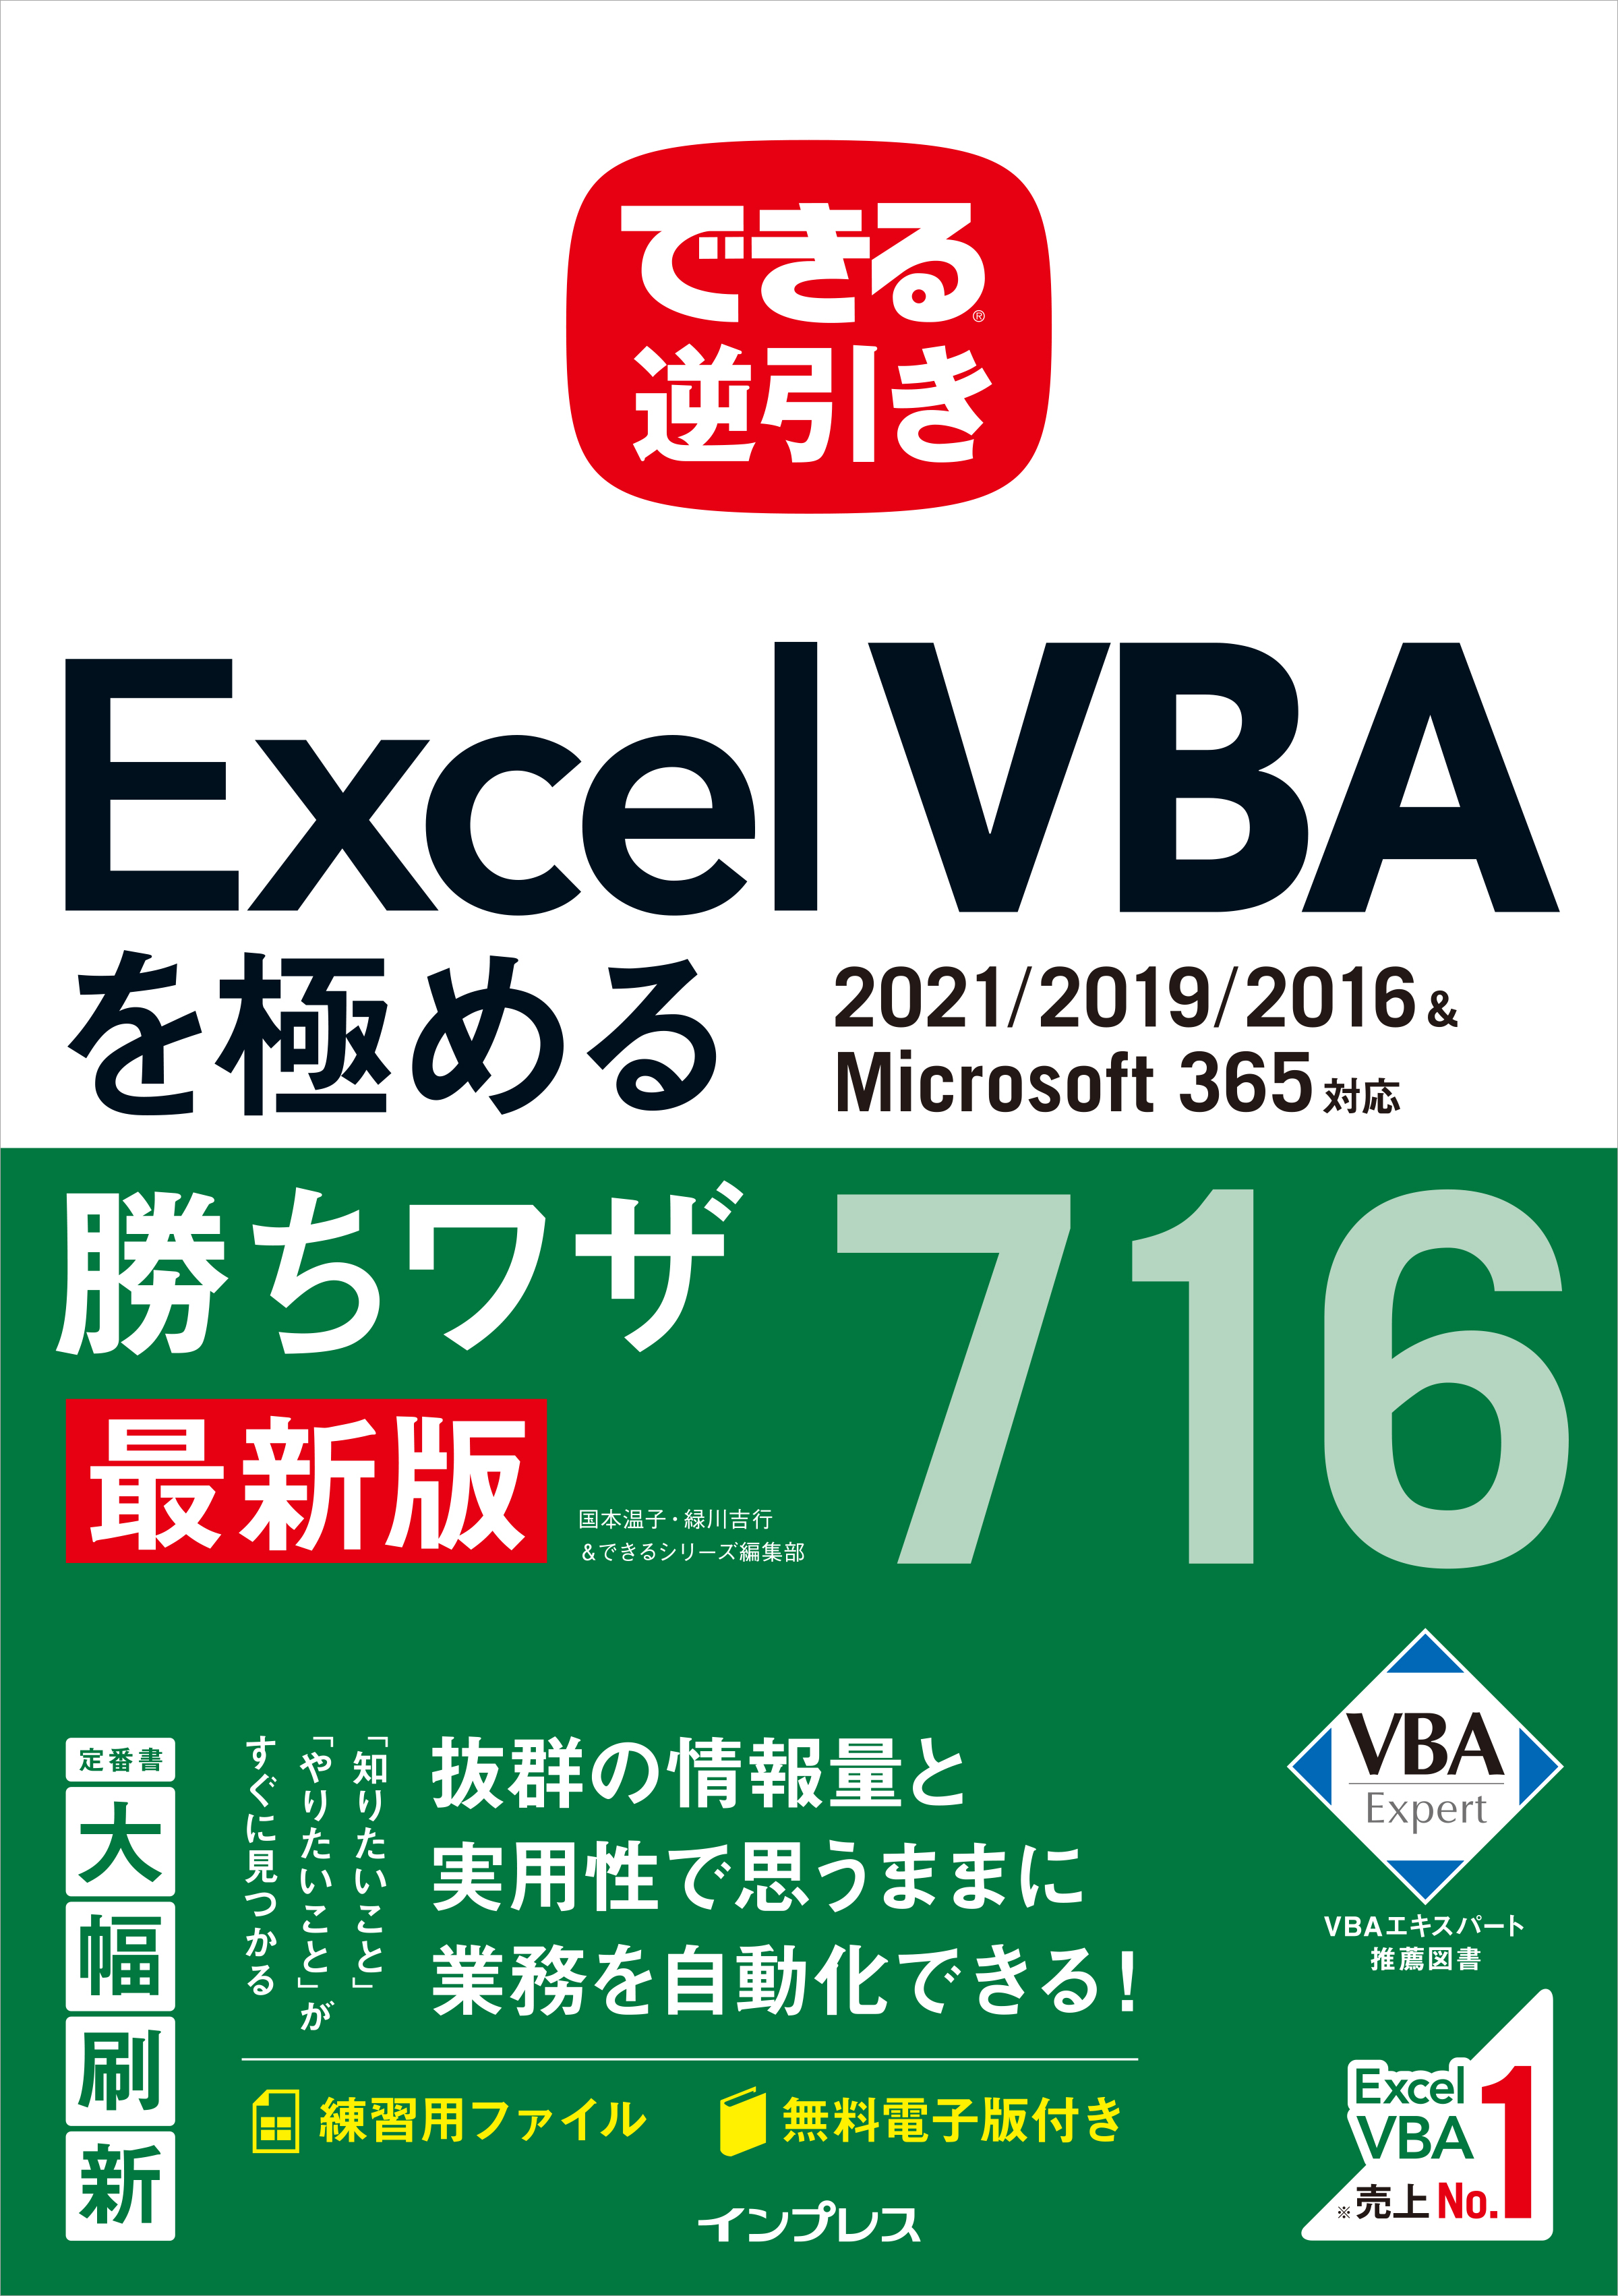 仕事に役立つExcel VBAのワザ集 『できる逆引き Excel VBAを極める勝ち